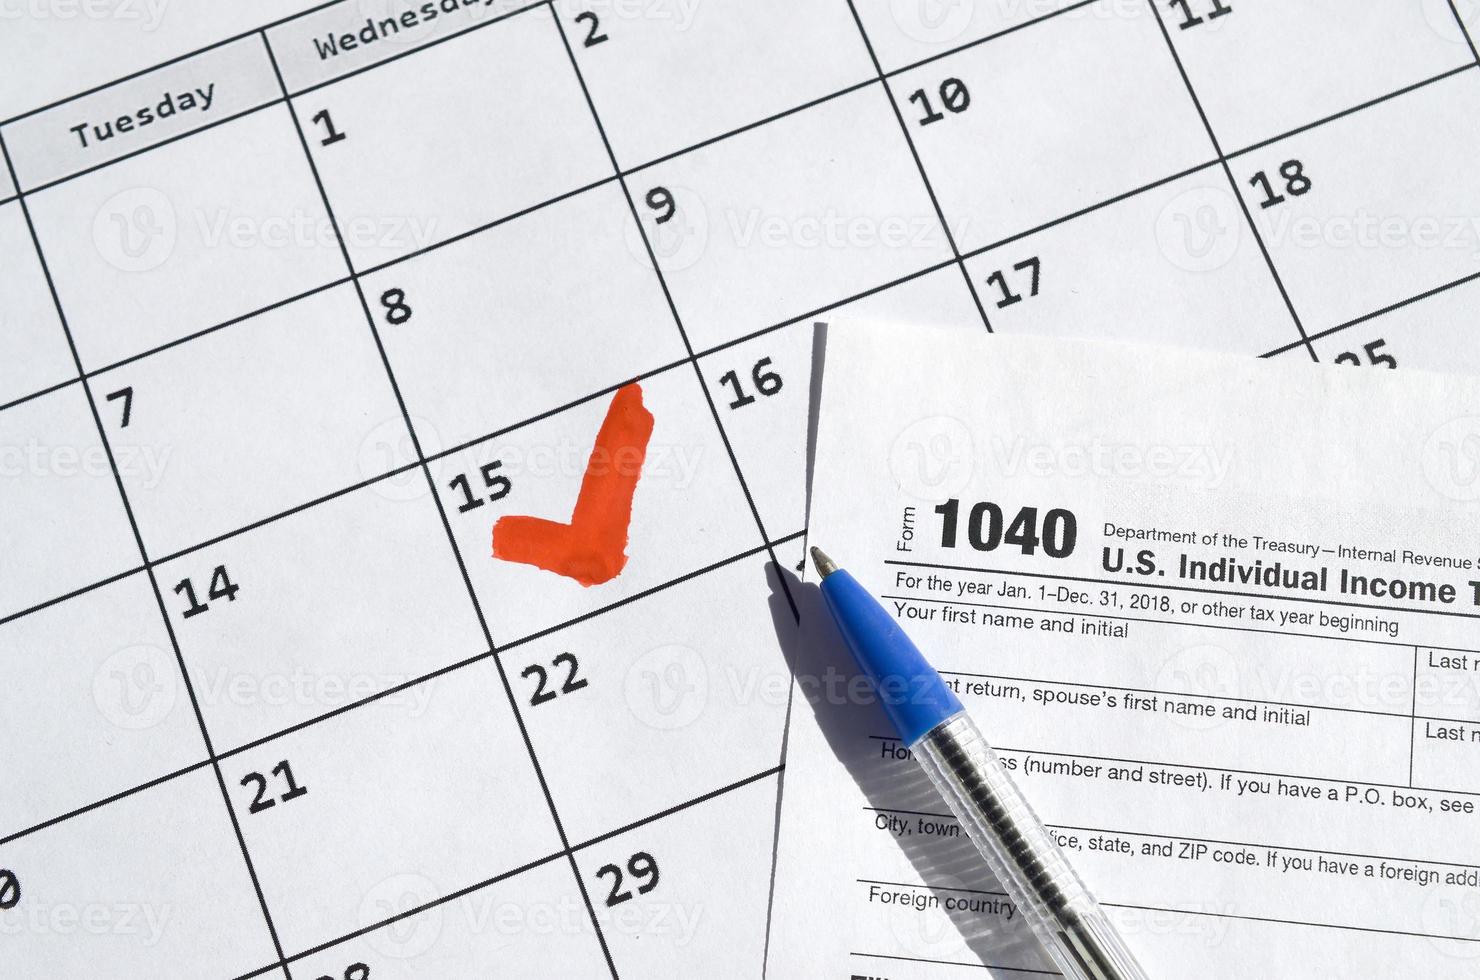 1040 declaración de impuestos sobre la renta individual en blanco y bolígrafo en la página del calendario con el 15 de abril marcado foto